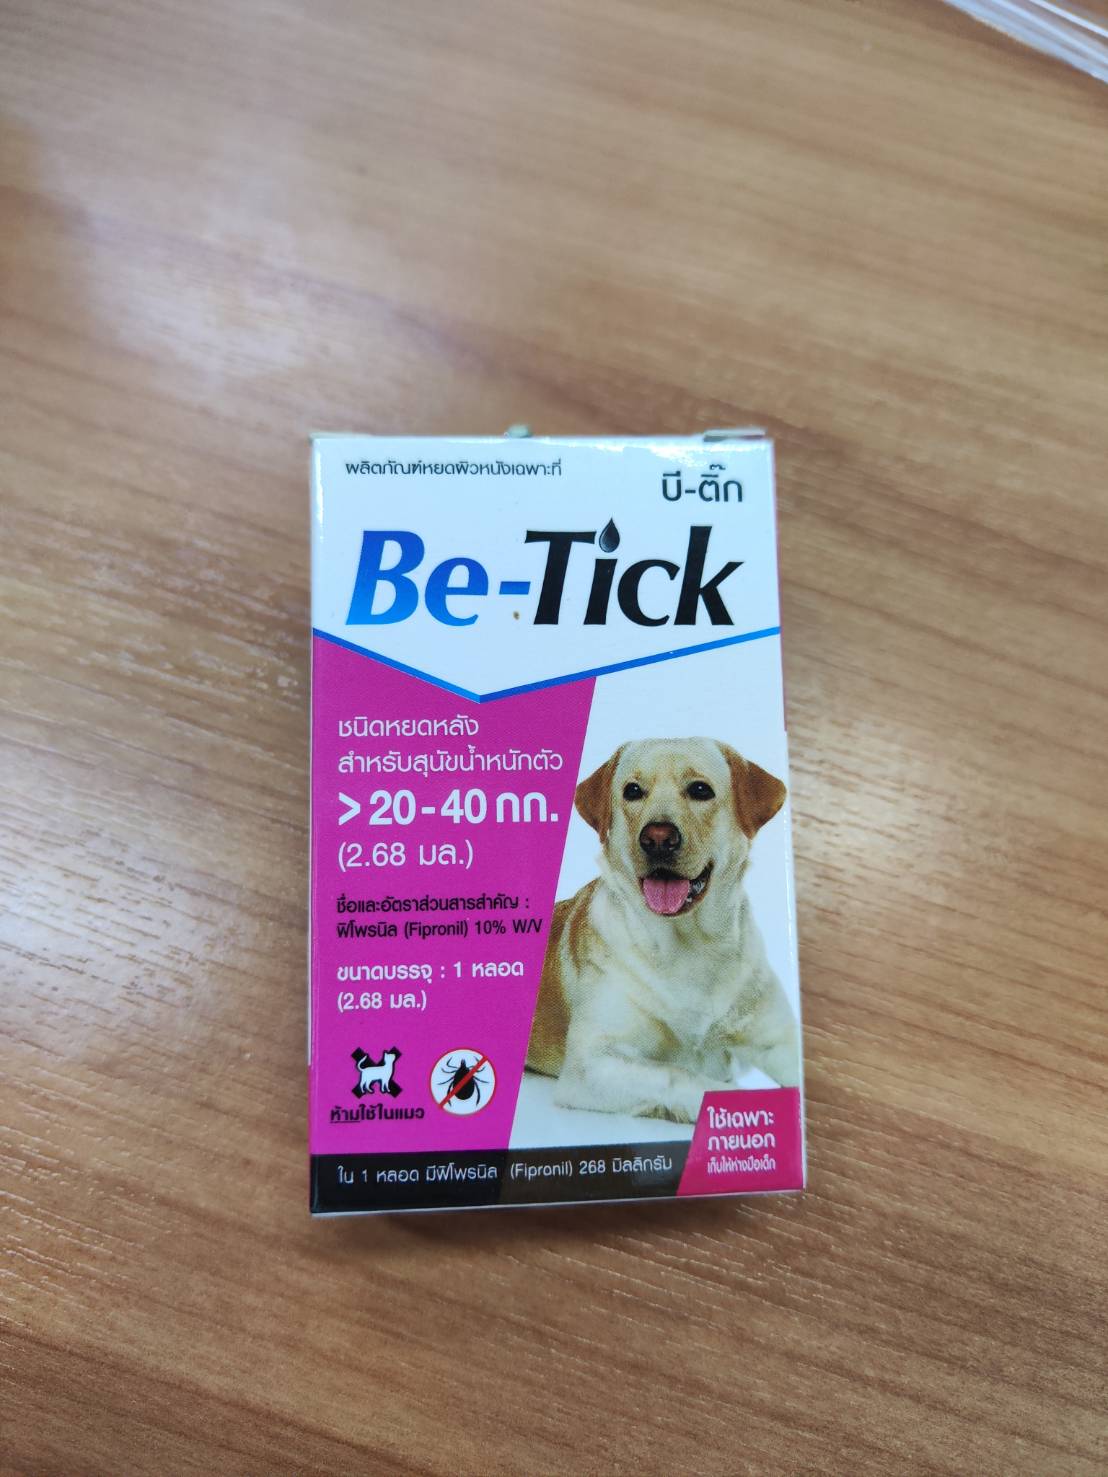 สเปรย์ฉีด ผลิตภัณฑ์กำจัดหมัด Be-Tick ไข่หมัด สุนัข - ยาหยอด เลข อย วอส 11/2561  กำจัดเห็บหมัด สุนัข ป้องกันเห็บหมัด